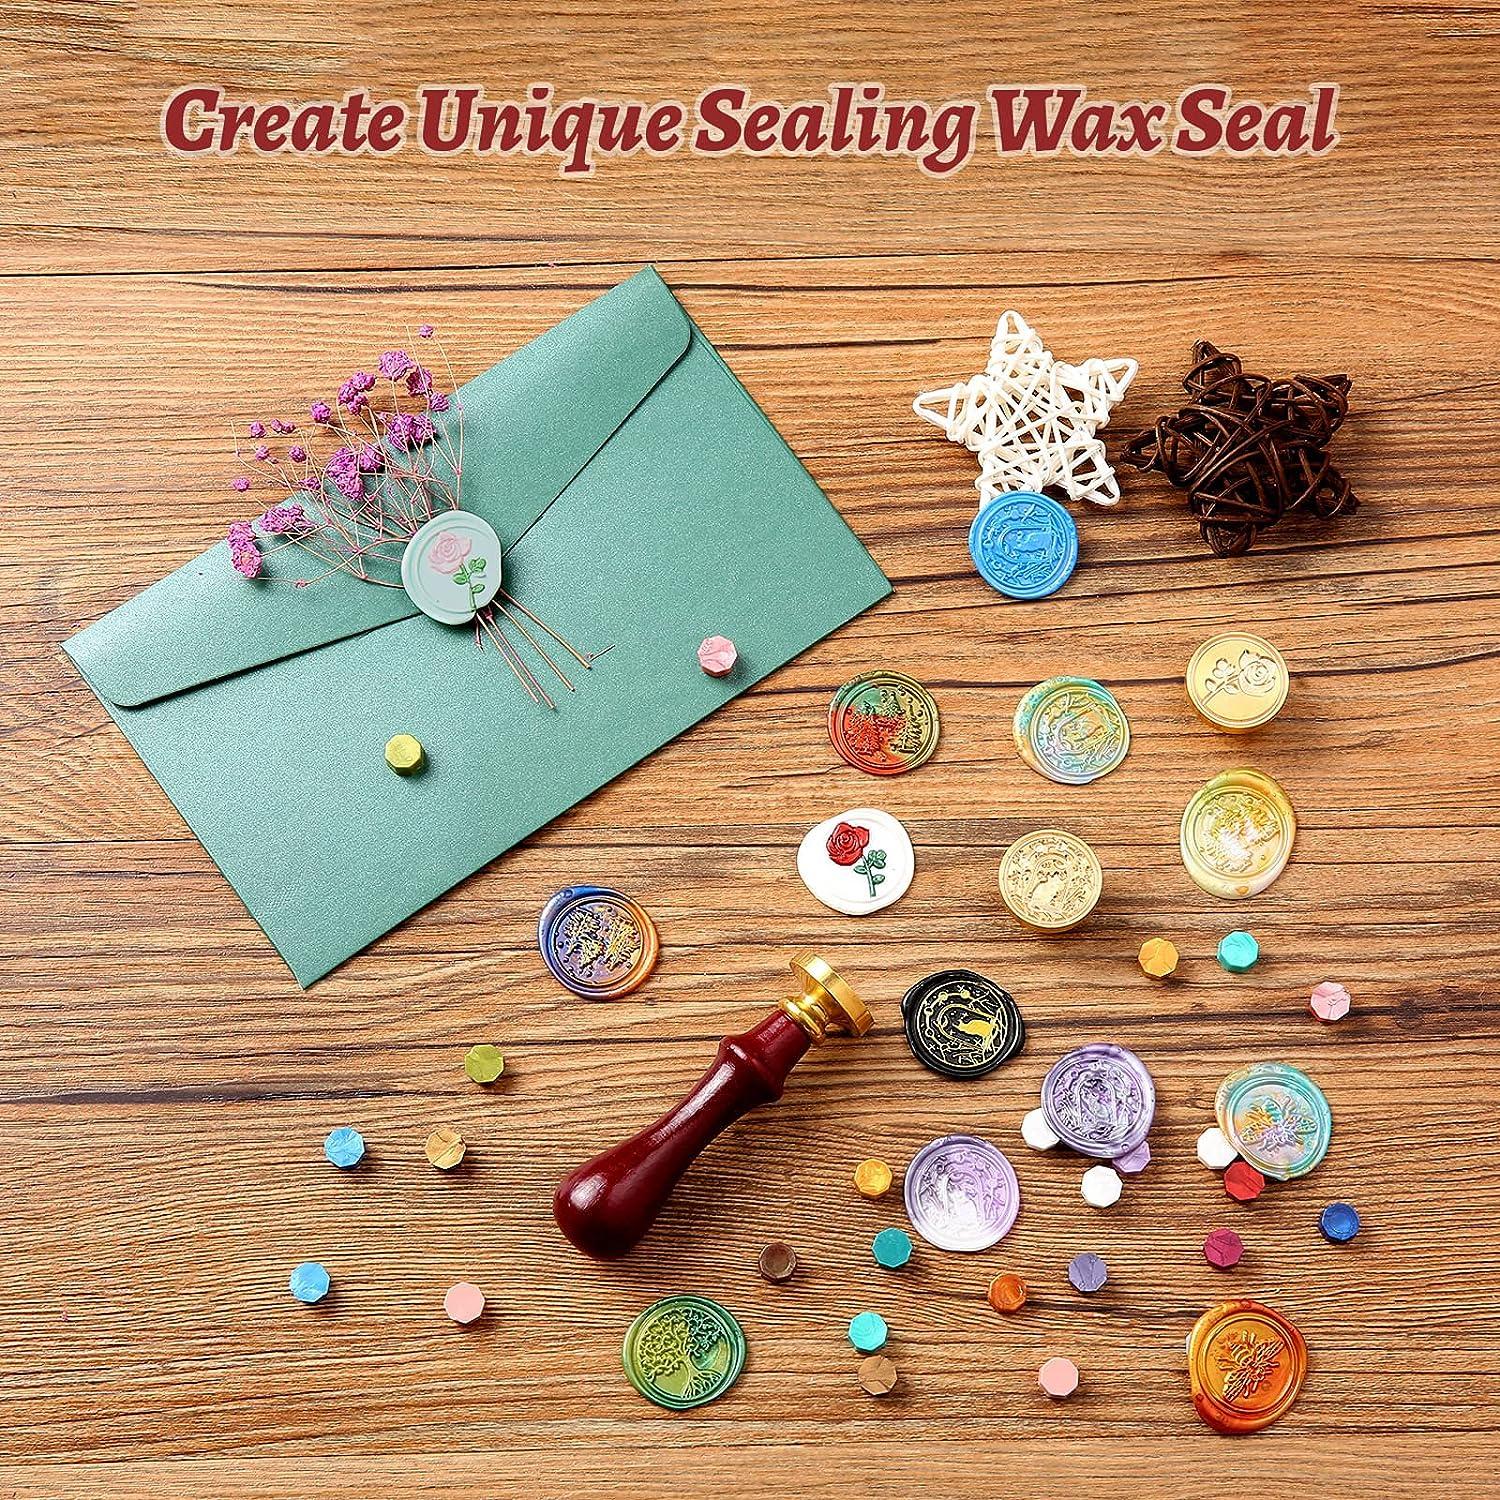 Creating 4 Wax Seals Using My New Wax Sealing Kit! 